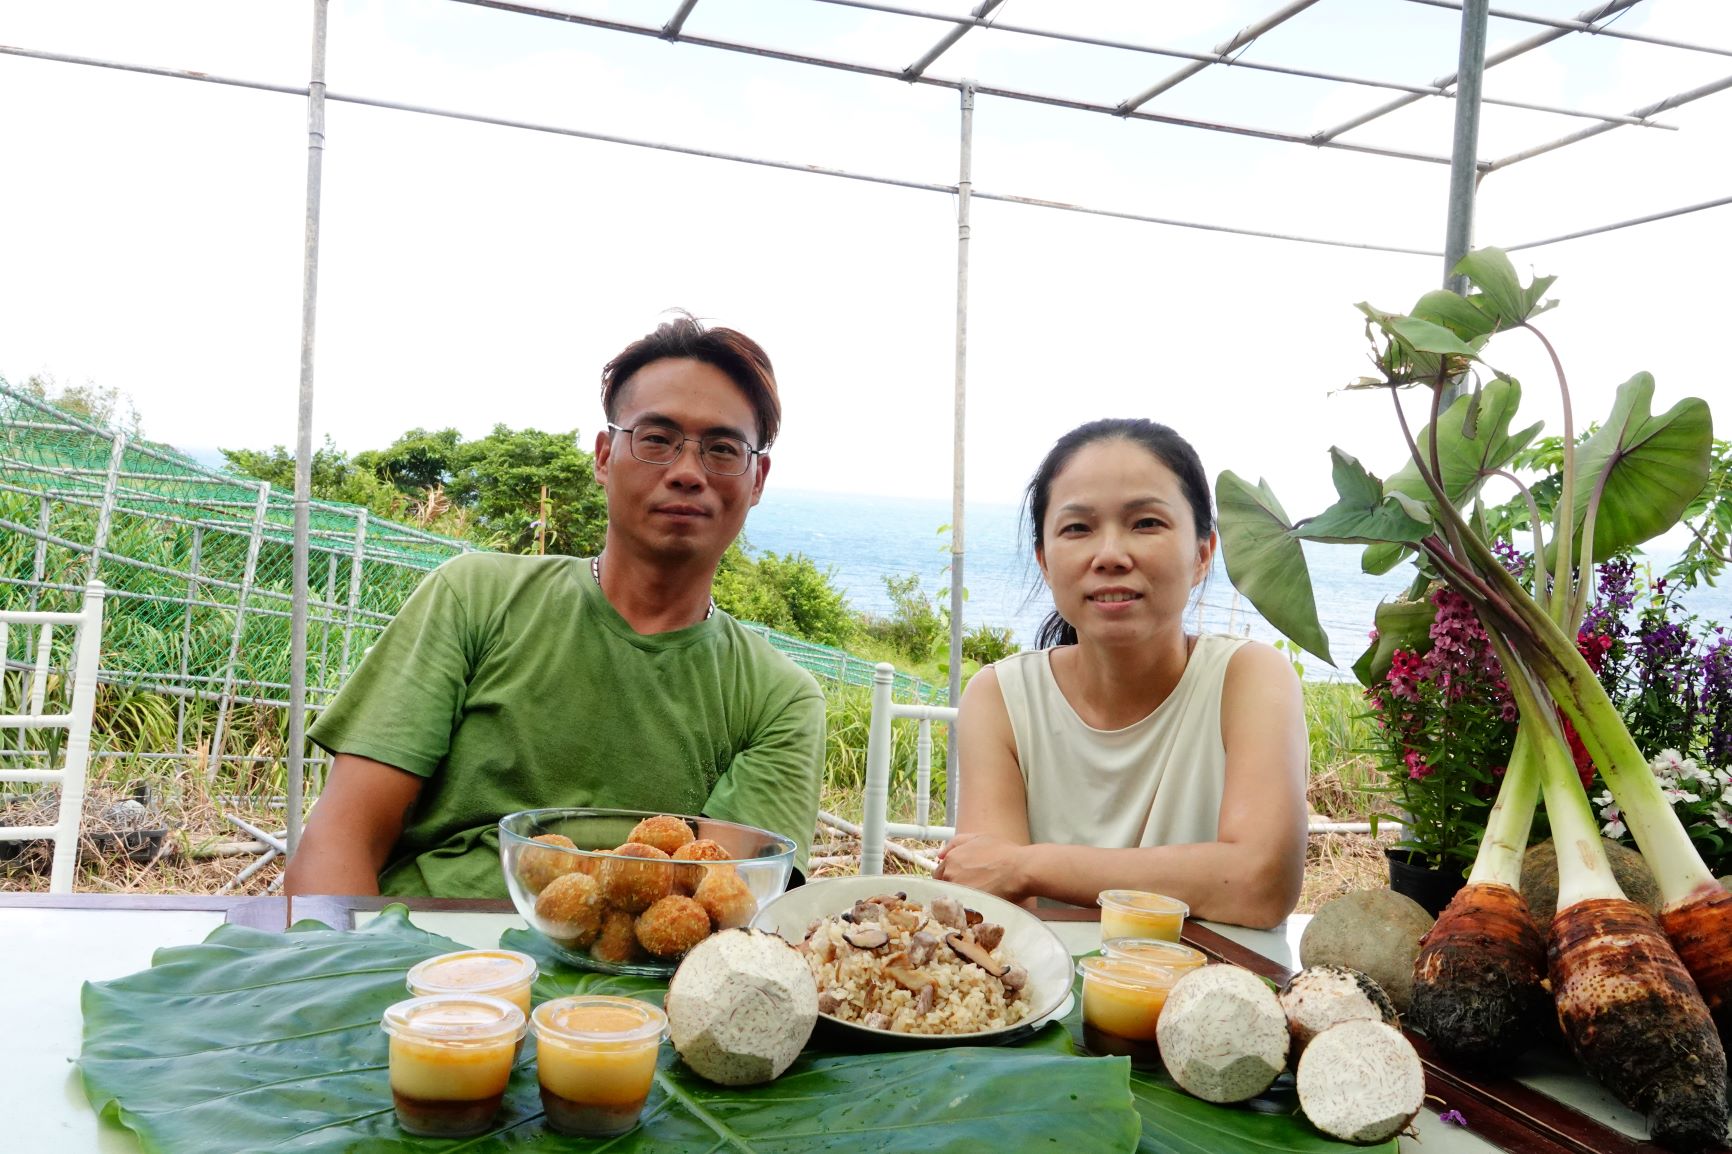 青農王御庭(左)與木人艸食物設計師蘇慧娟(右)合影(照片於三級警戒前拍攝)